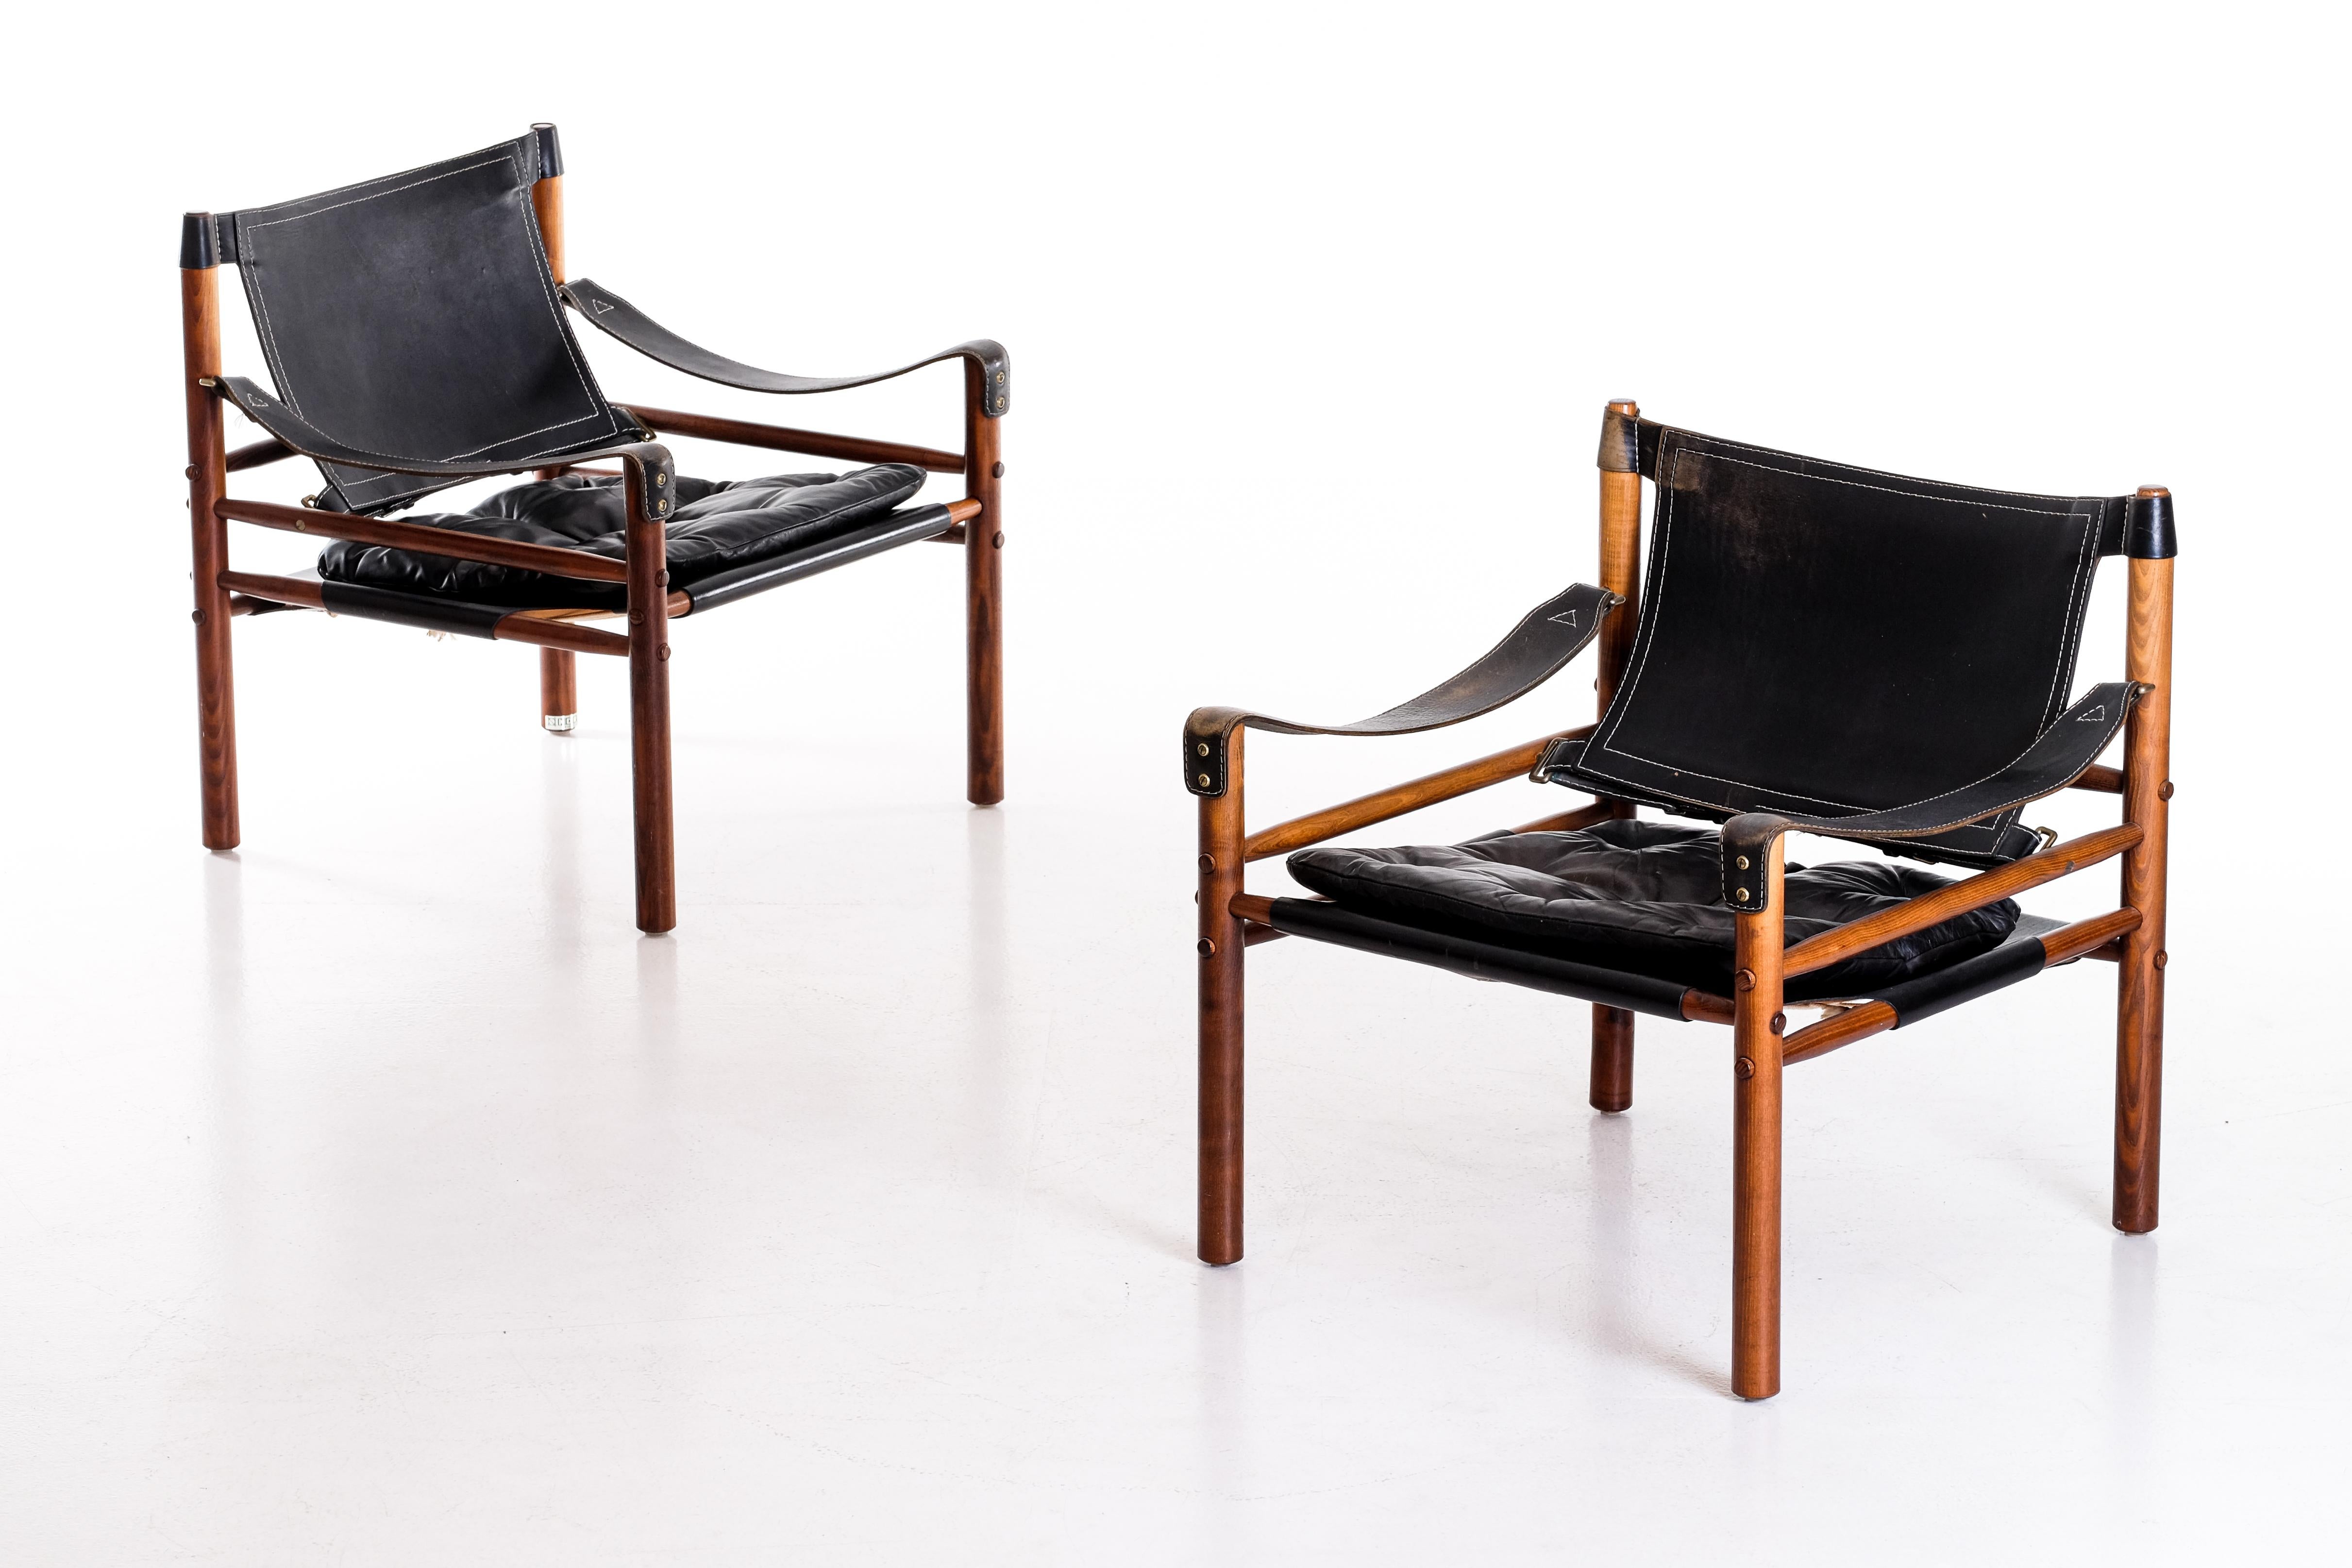 Paar Safaristühle Modell Sirocco in gutem Zustand mit original schwarzem Leder.
Entworfen von Arne Norell, hergestellt von Arne Norell AB in Aneby, Schweden, 1960er Jahre.
Globaler Haustürversand, Lieferung innerhalb von 10 Tagen: 1000 €.




